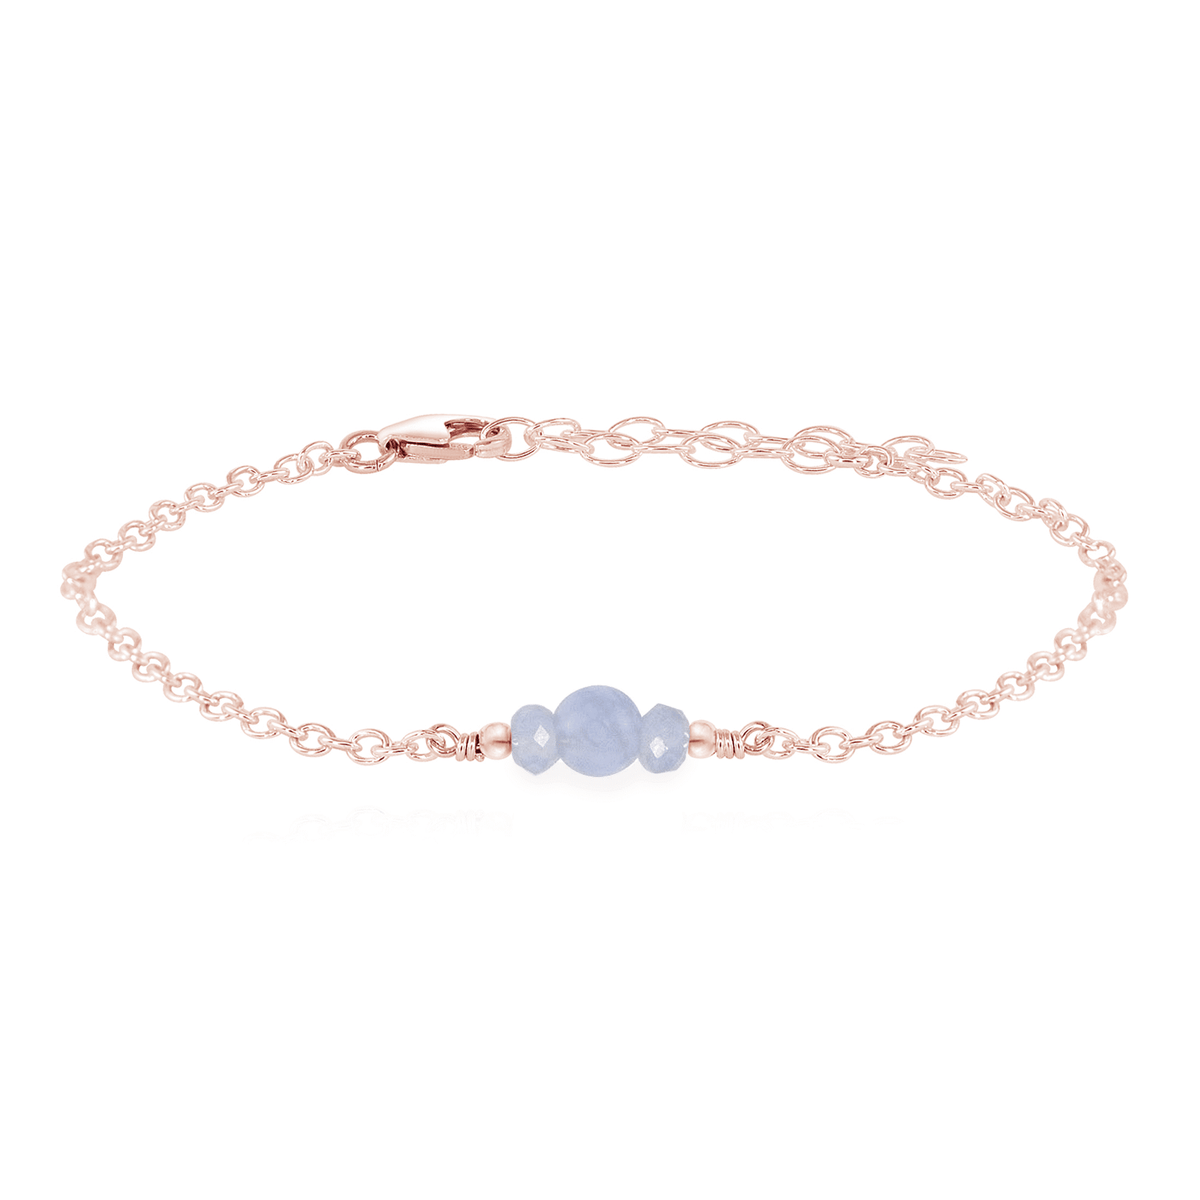 Dainty Bracelet - Blue Lace Agate - 14K Rose Gold Fill - Luna Tide Handmade Jewellery